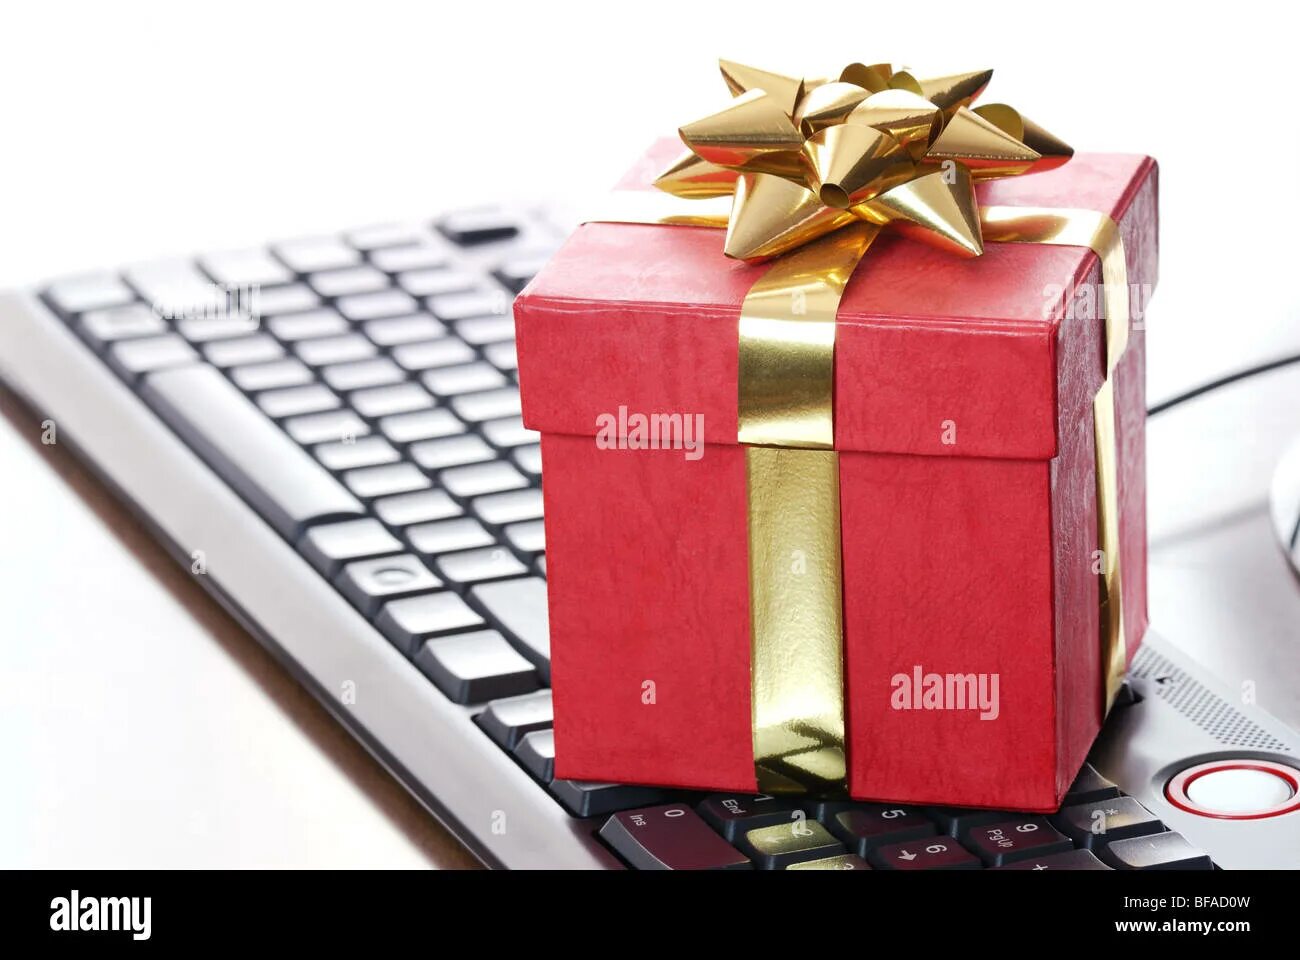 Хорошие подарки приходят. Подарок. Интернет в подарок. Ноутбук в подарок. Компьютер в подарок.